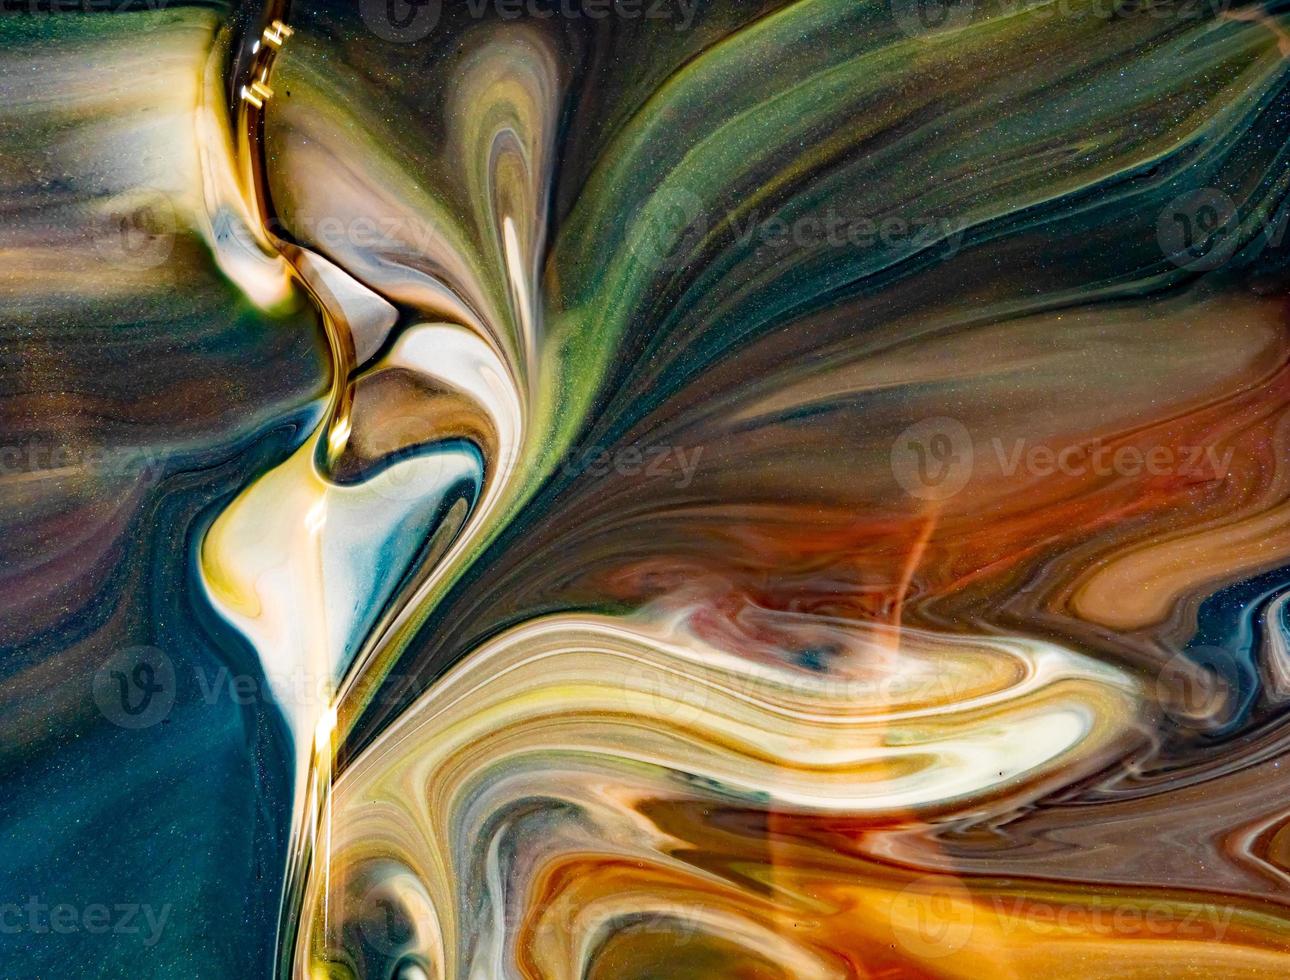 abstract kleurrijk marmeren schilderij foto